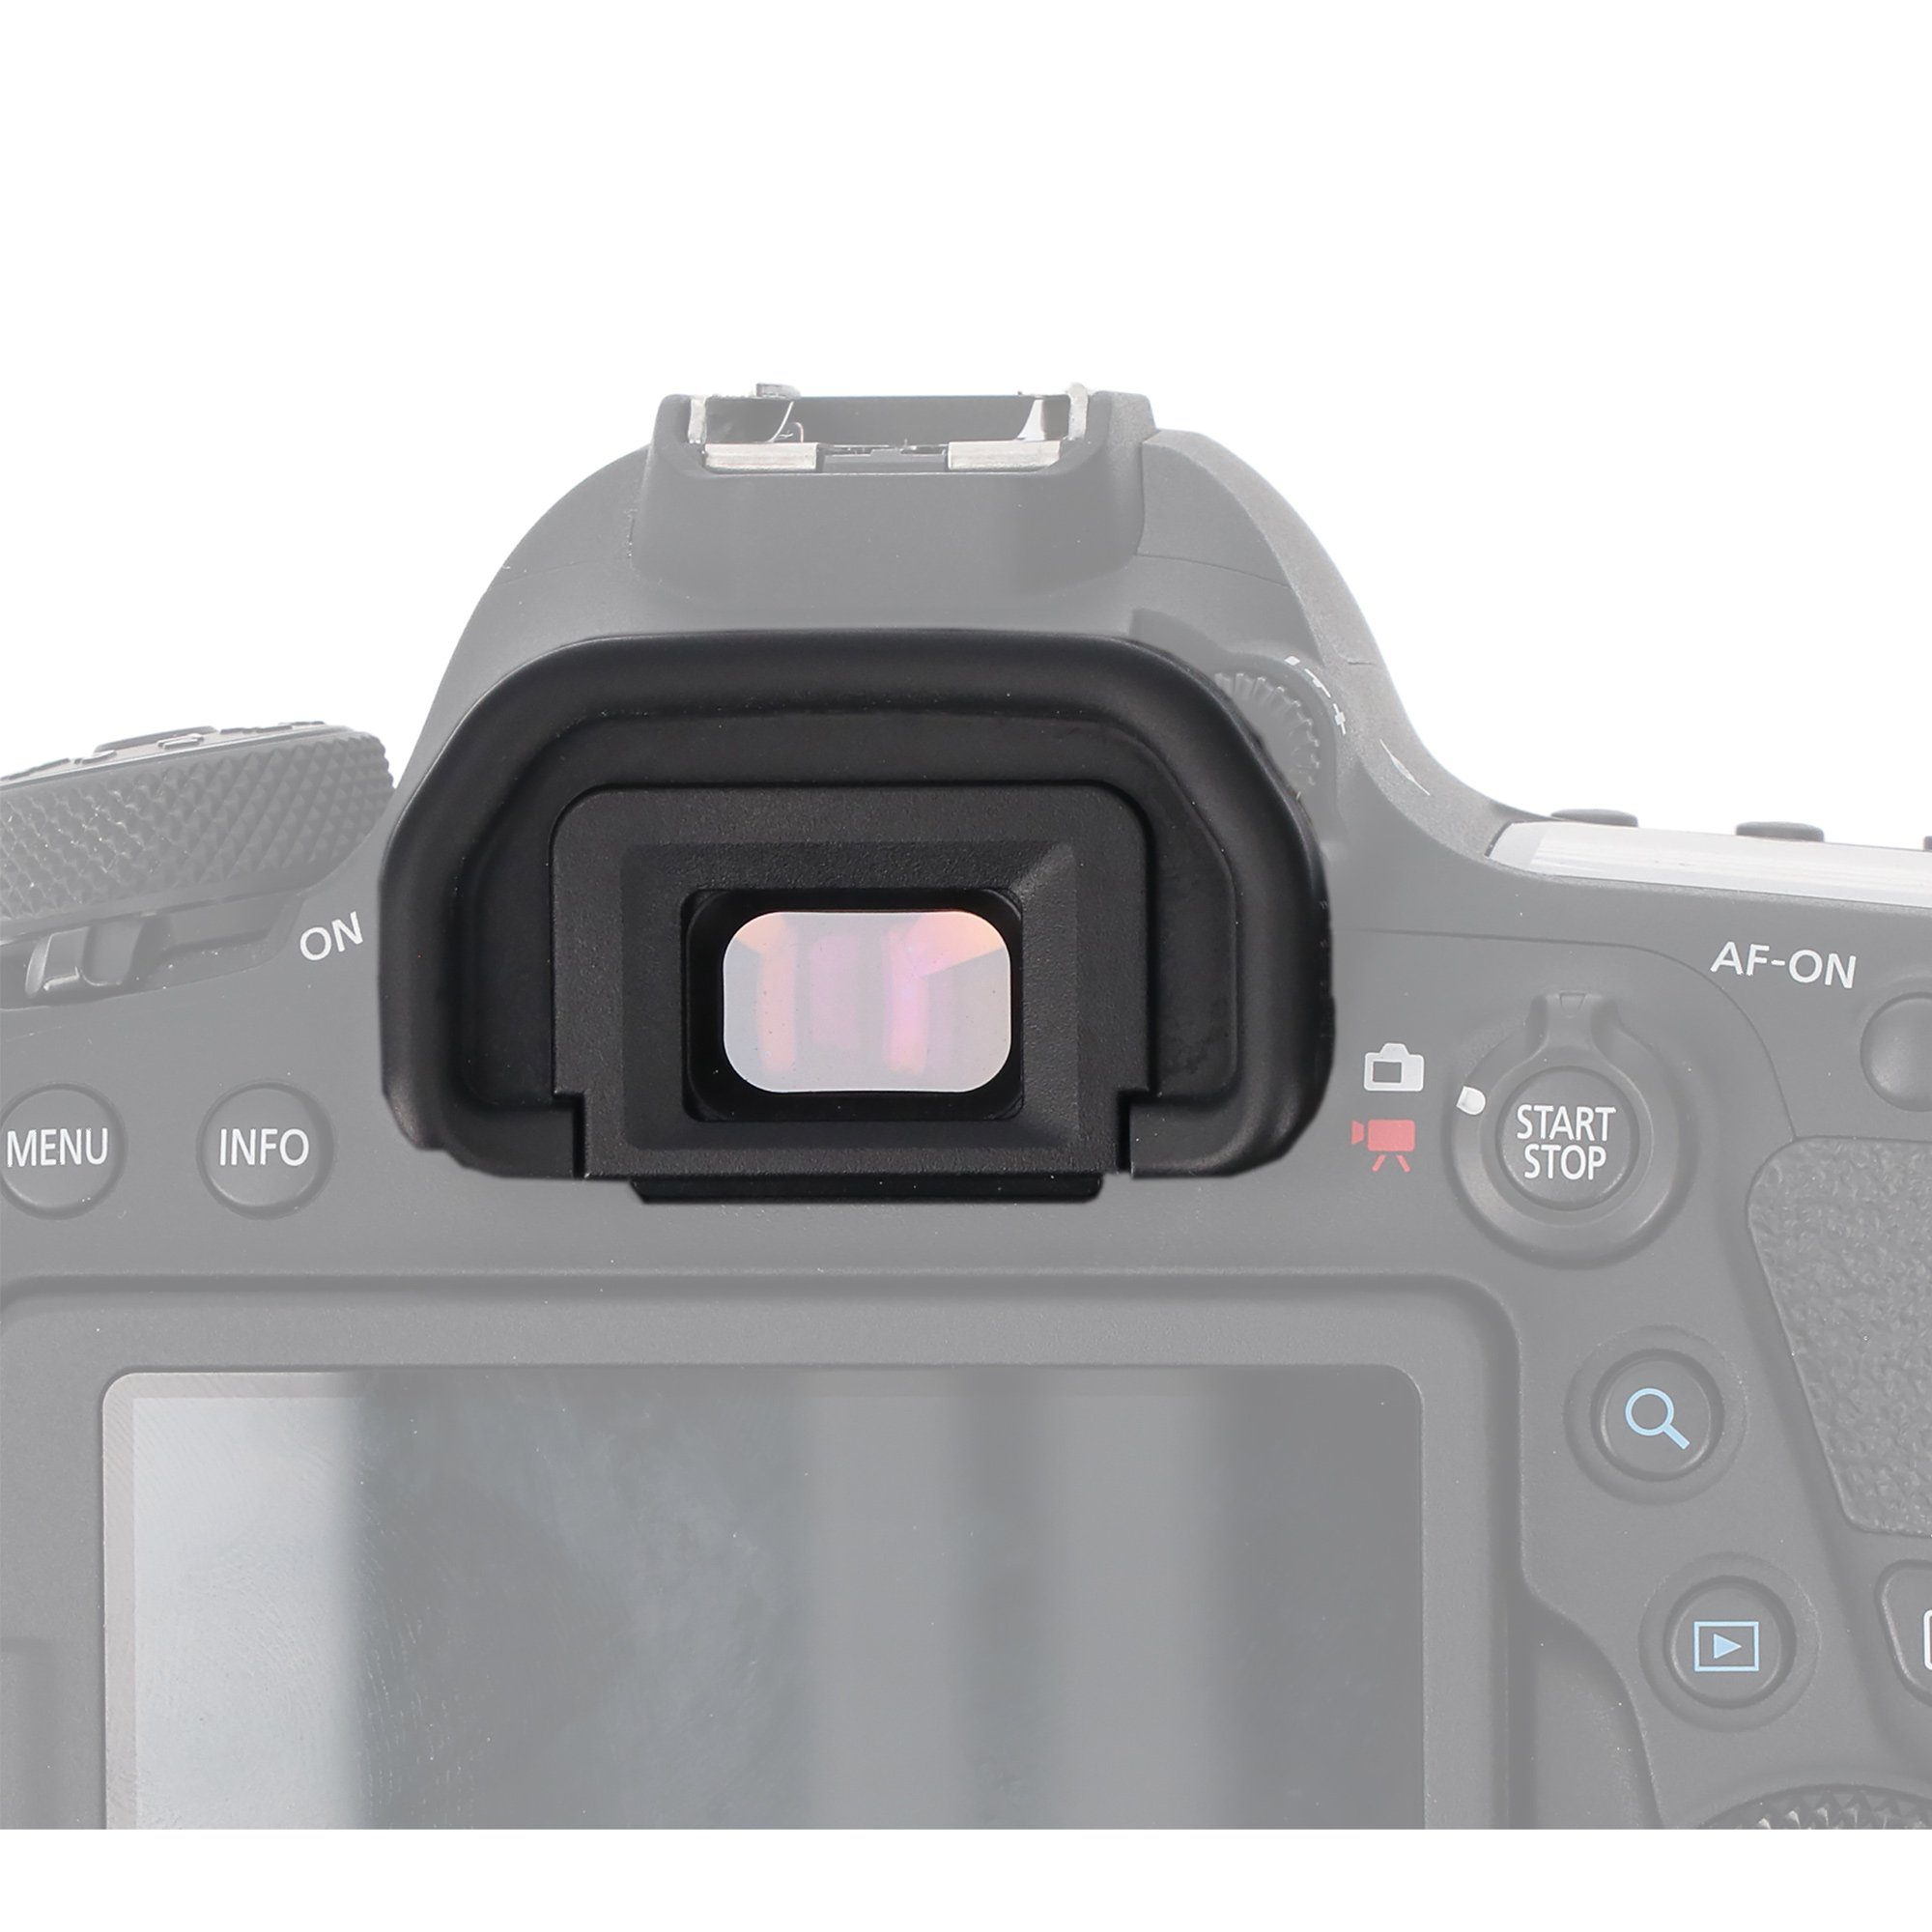 Sucher 5D EOS Mark 3 Augenmuschel Eye Mark ayex 1D Cup EG 3 Canon X 1D Aufstecksucher 7D